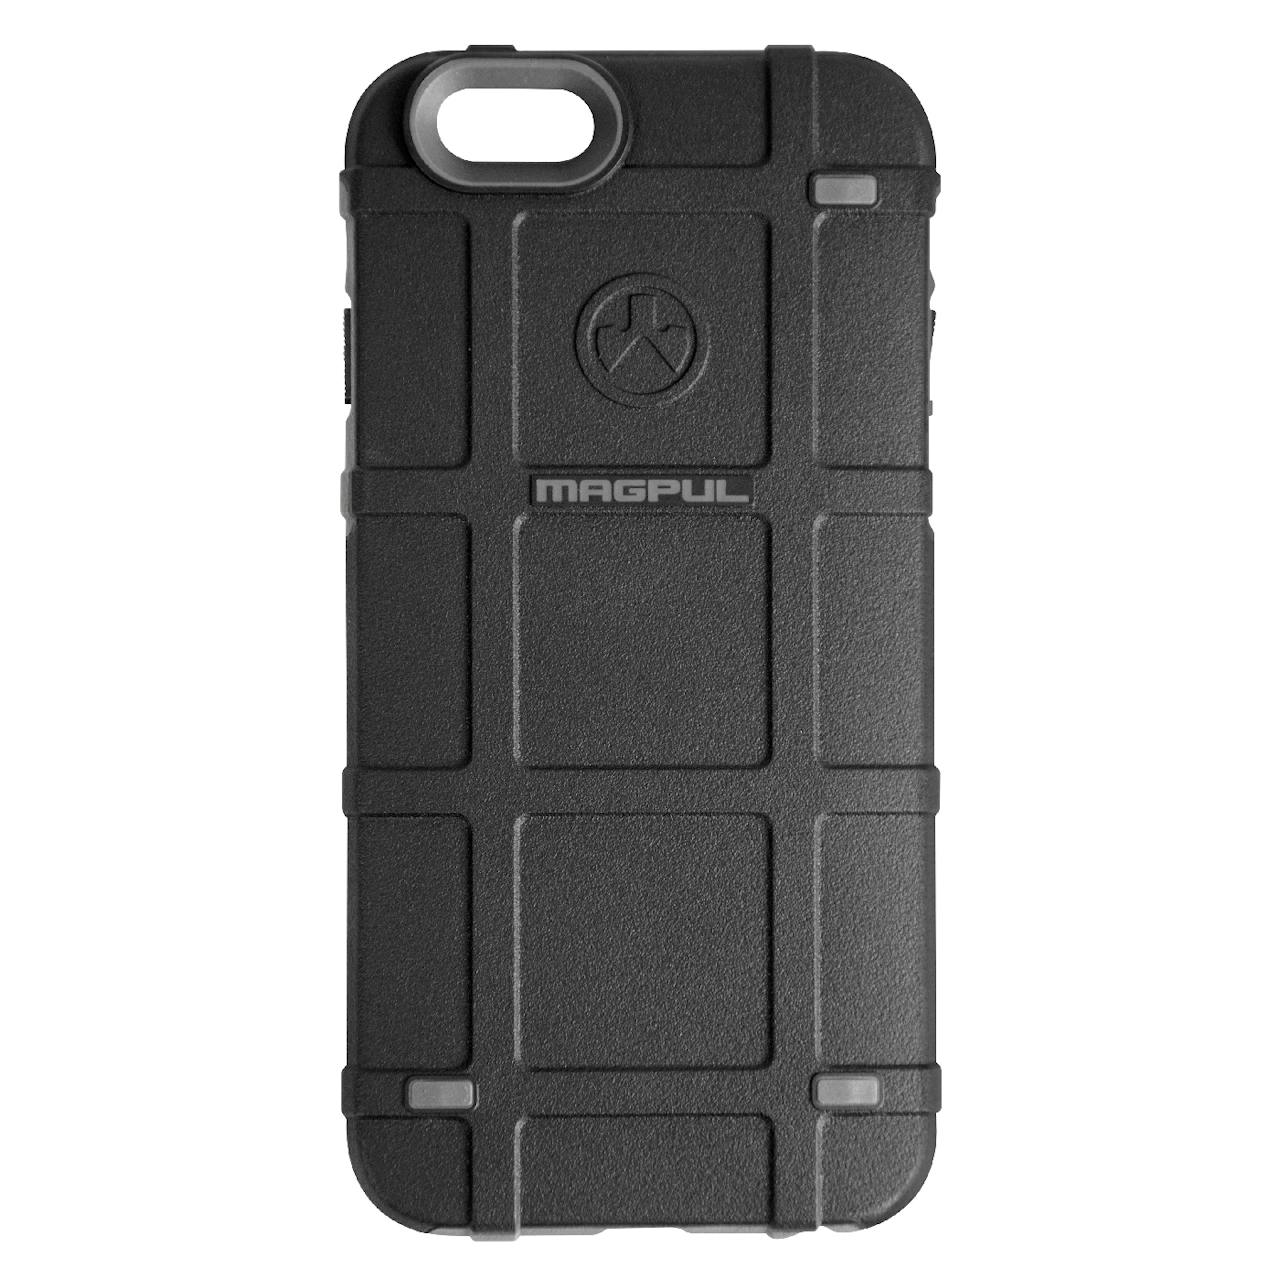 Magpul Bump Case - Iphone 6/6s